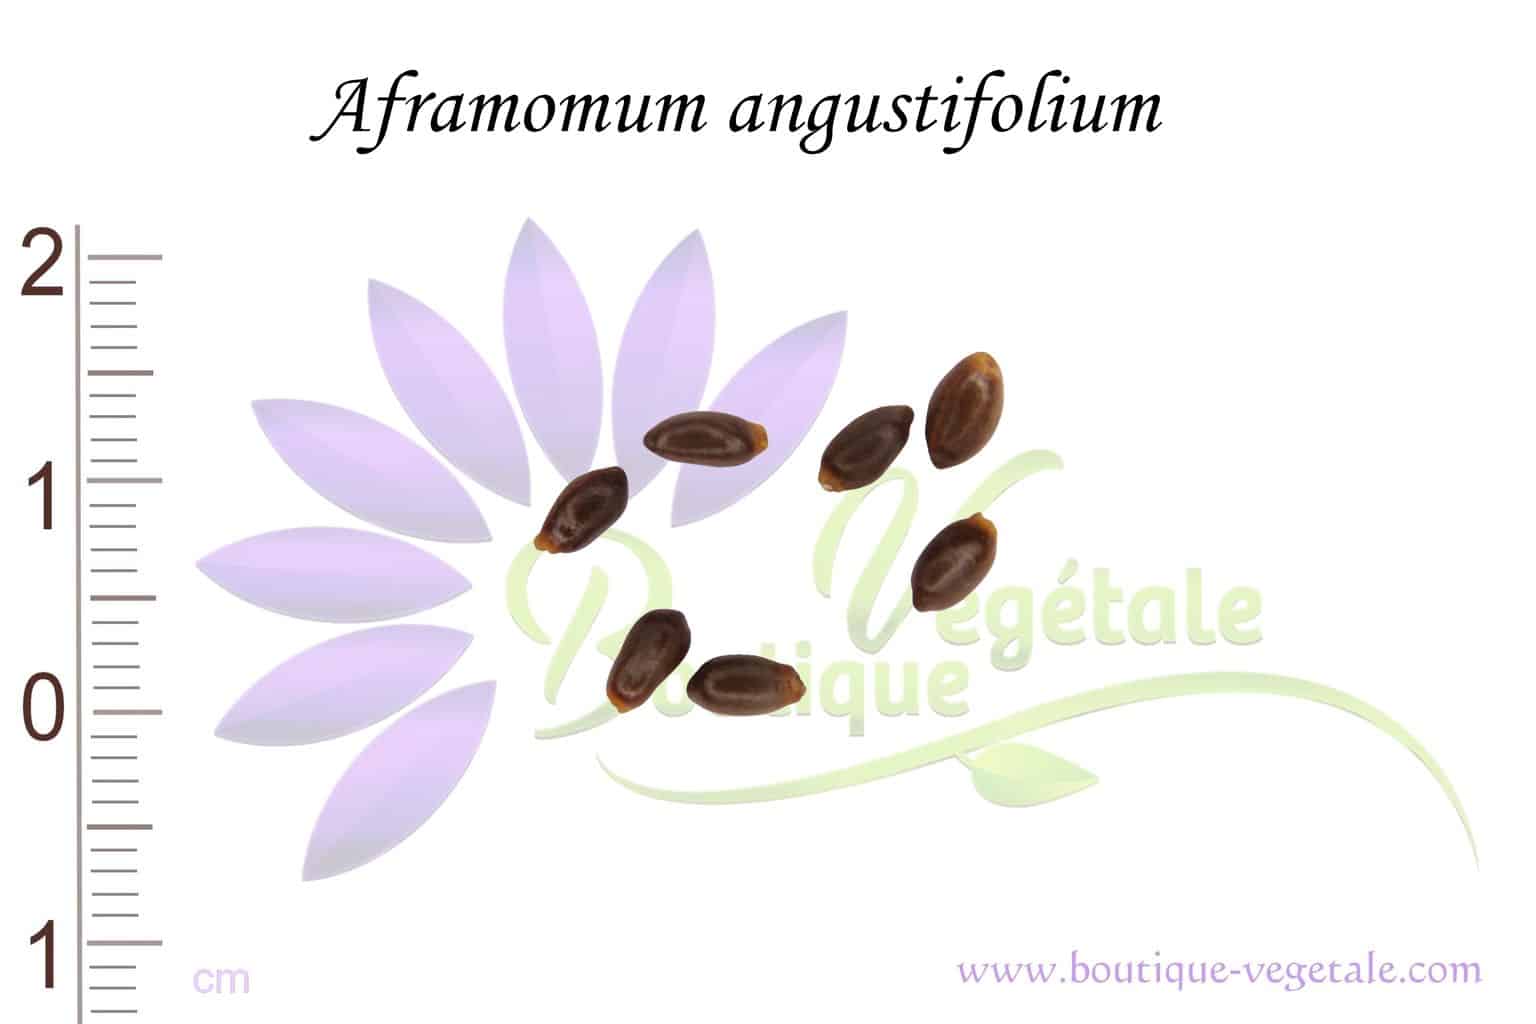 Graines d'Aframomum angustifolium, Aframomum angustifolium seeds